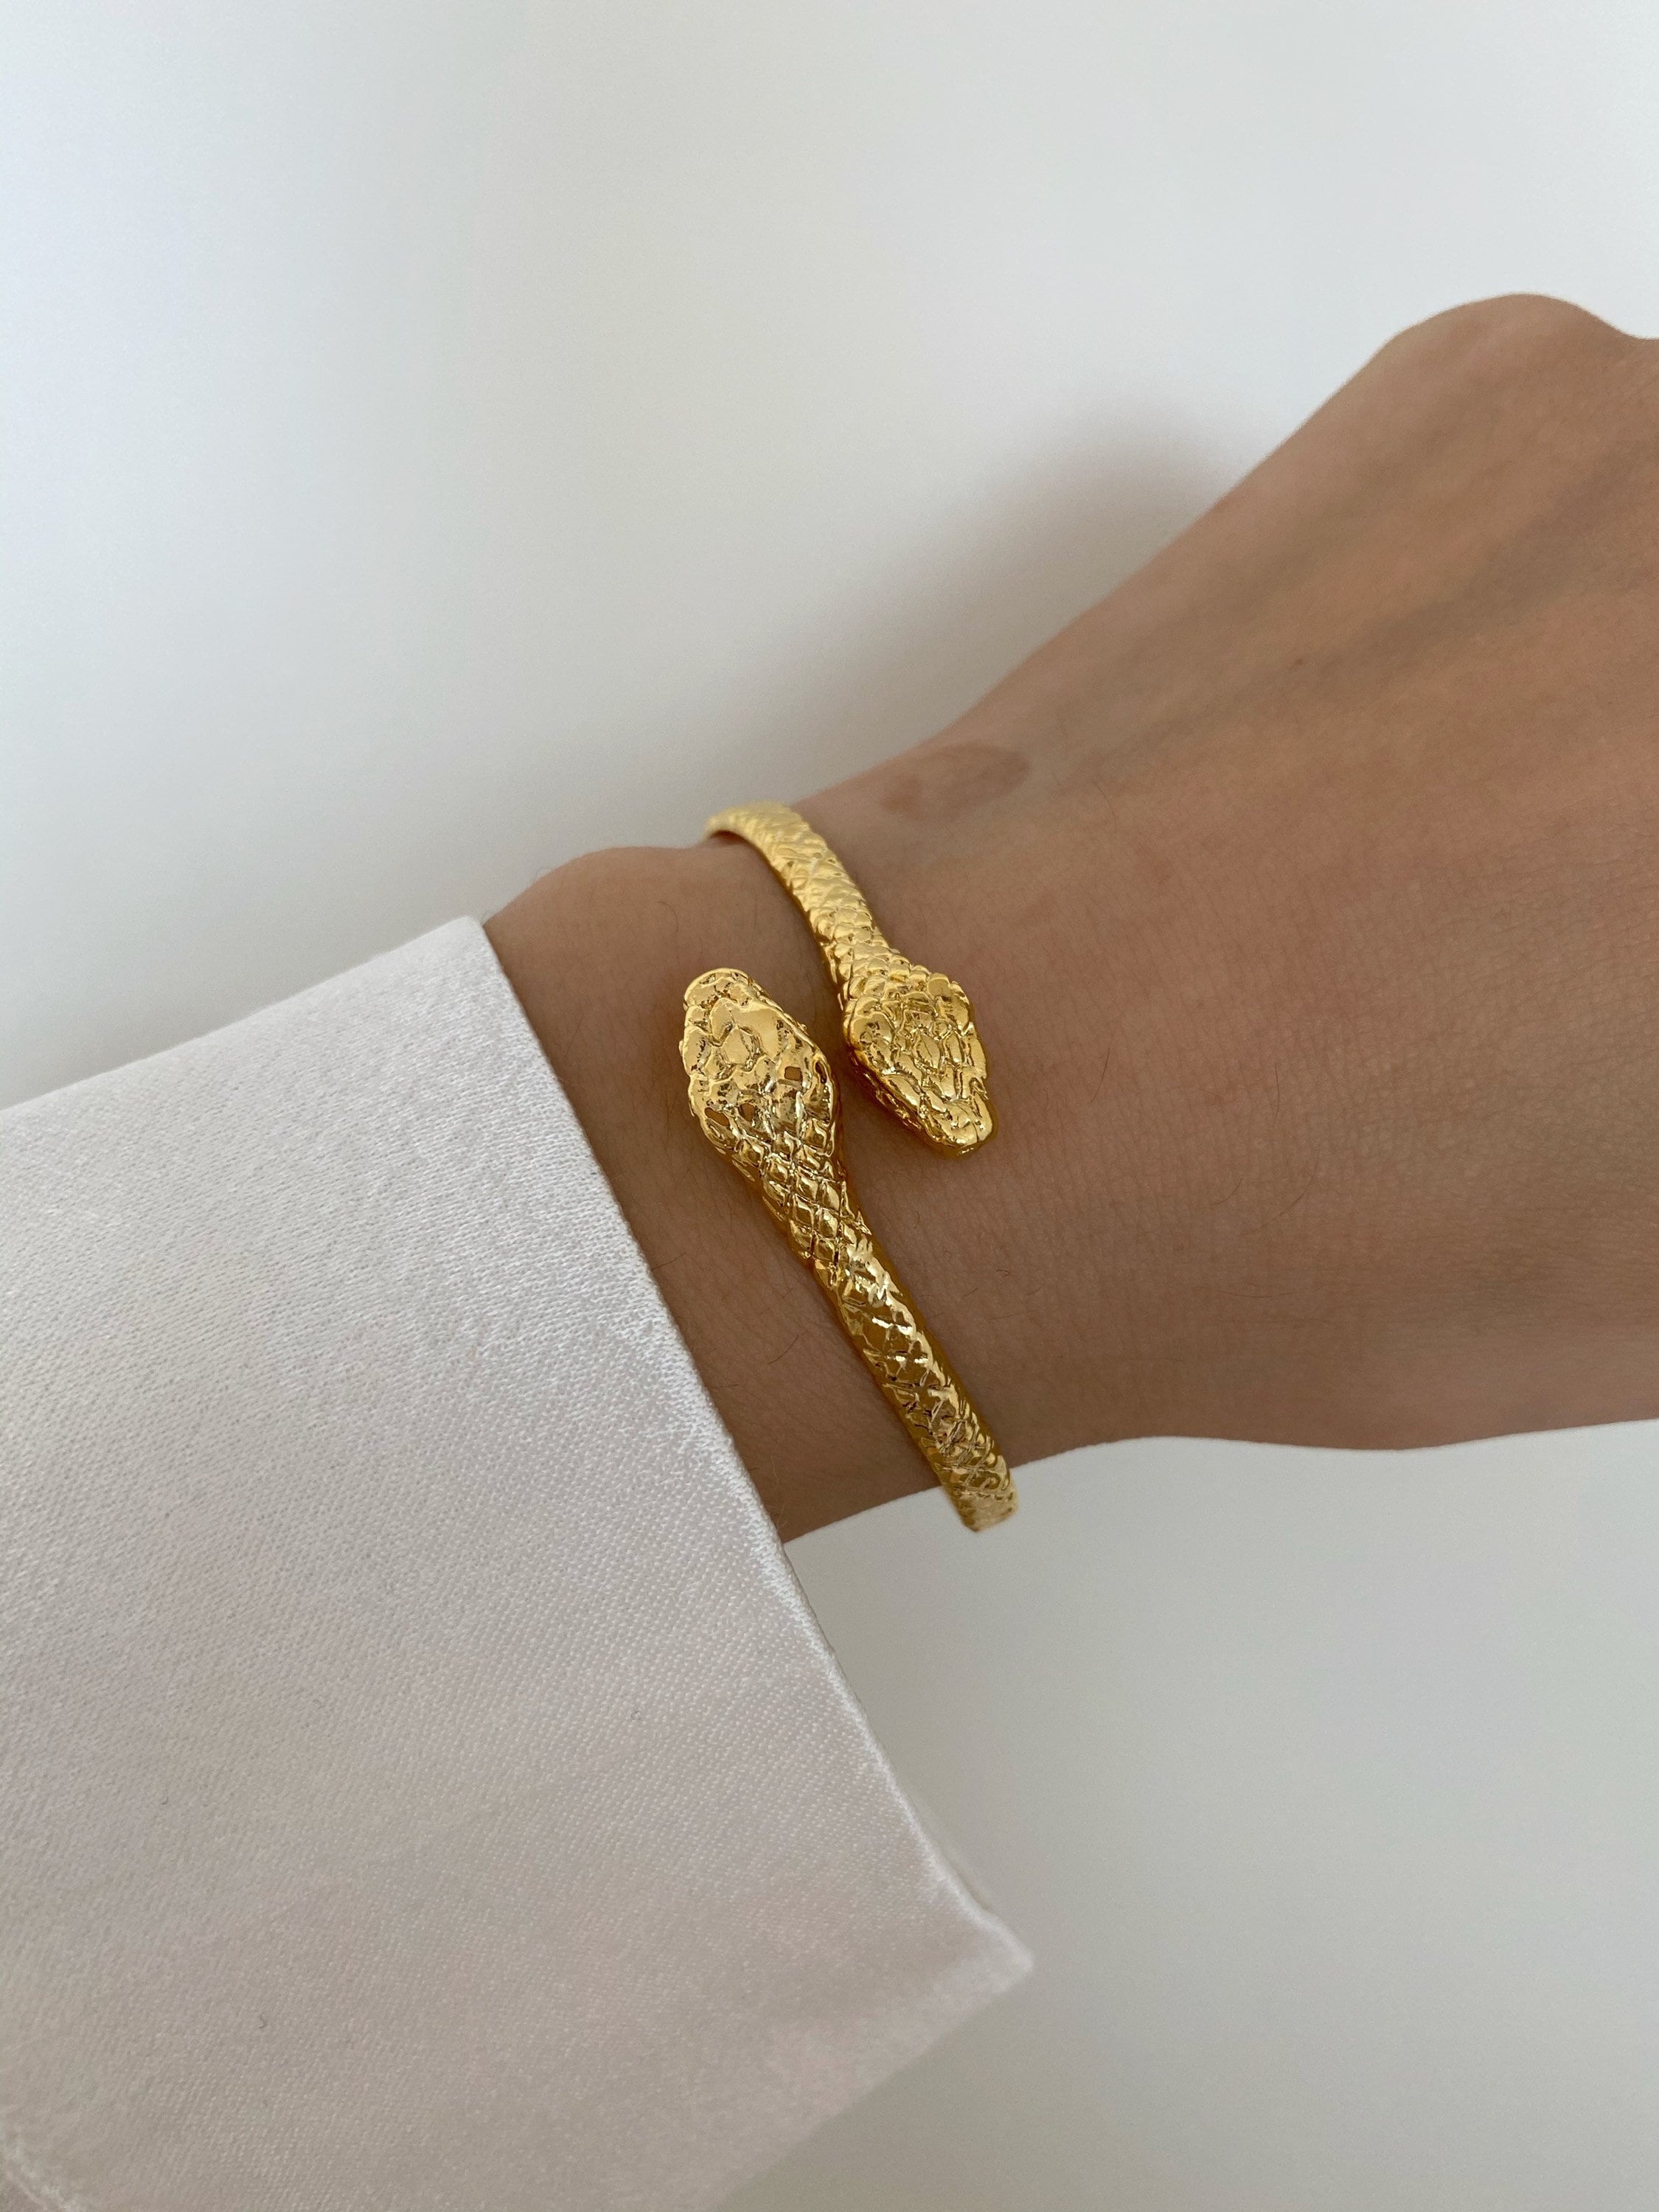 Sold at Auction: 14k gold coiled snake bracelet